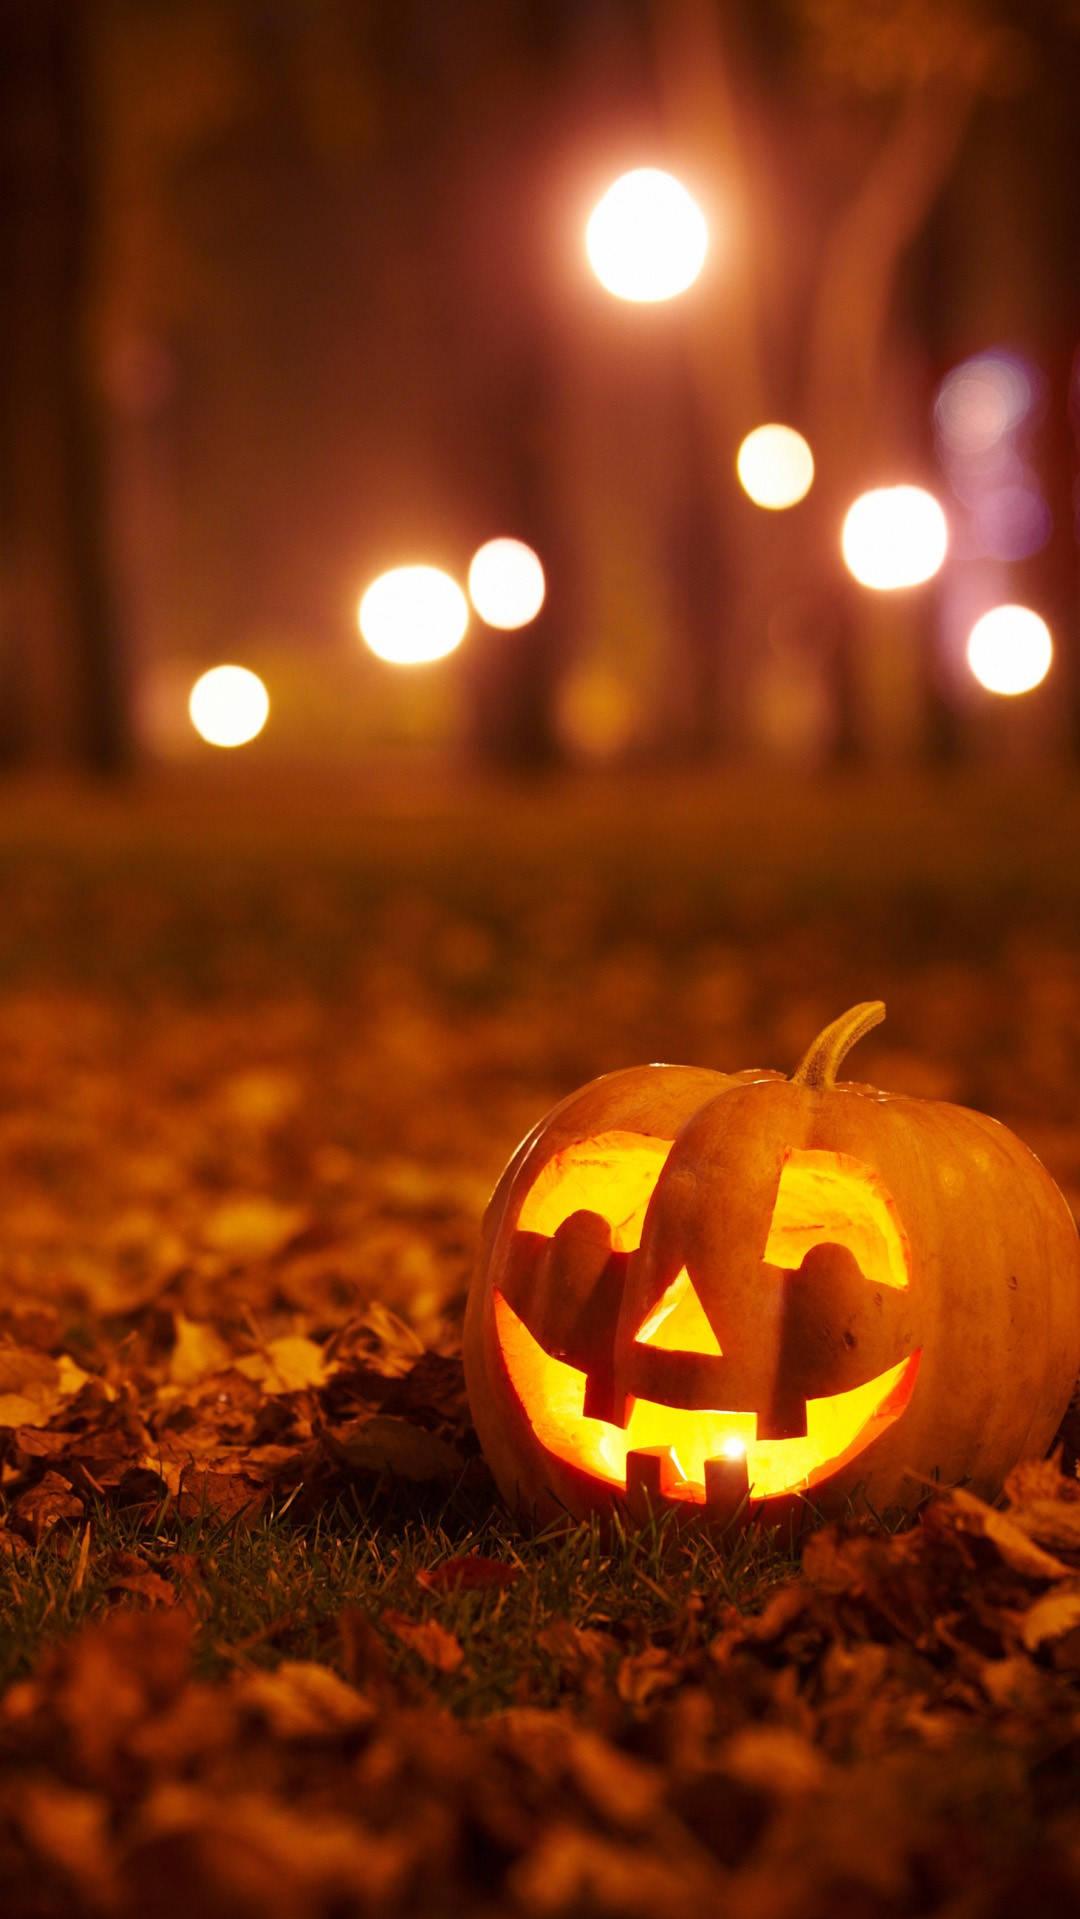 Download Glowing Pumpkin Halloween Iphone Wallpaper